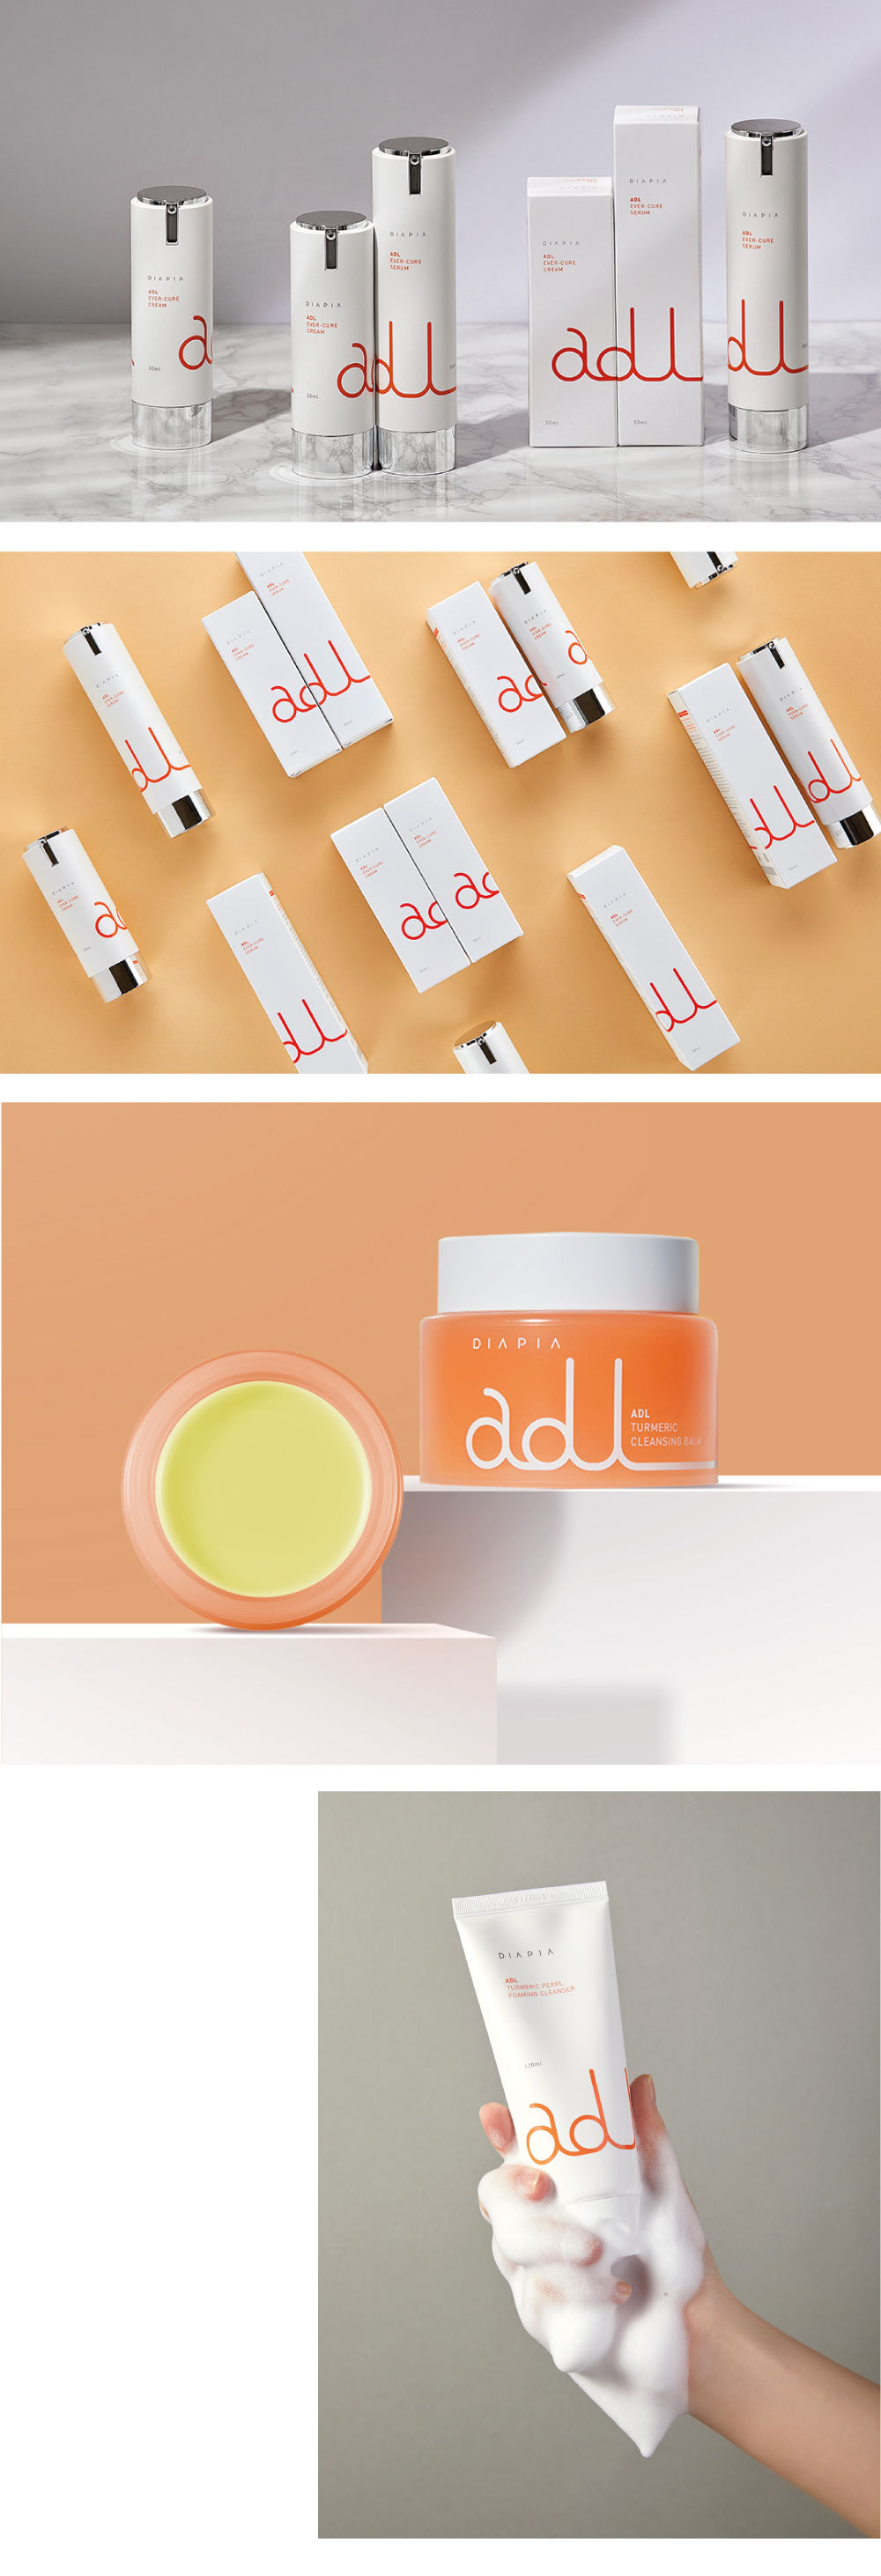 达亚比ADL系列化妆品包装设计图0